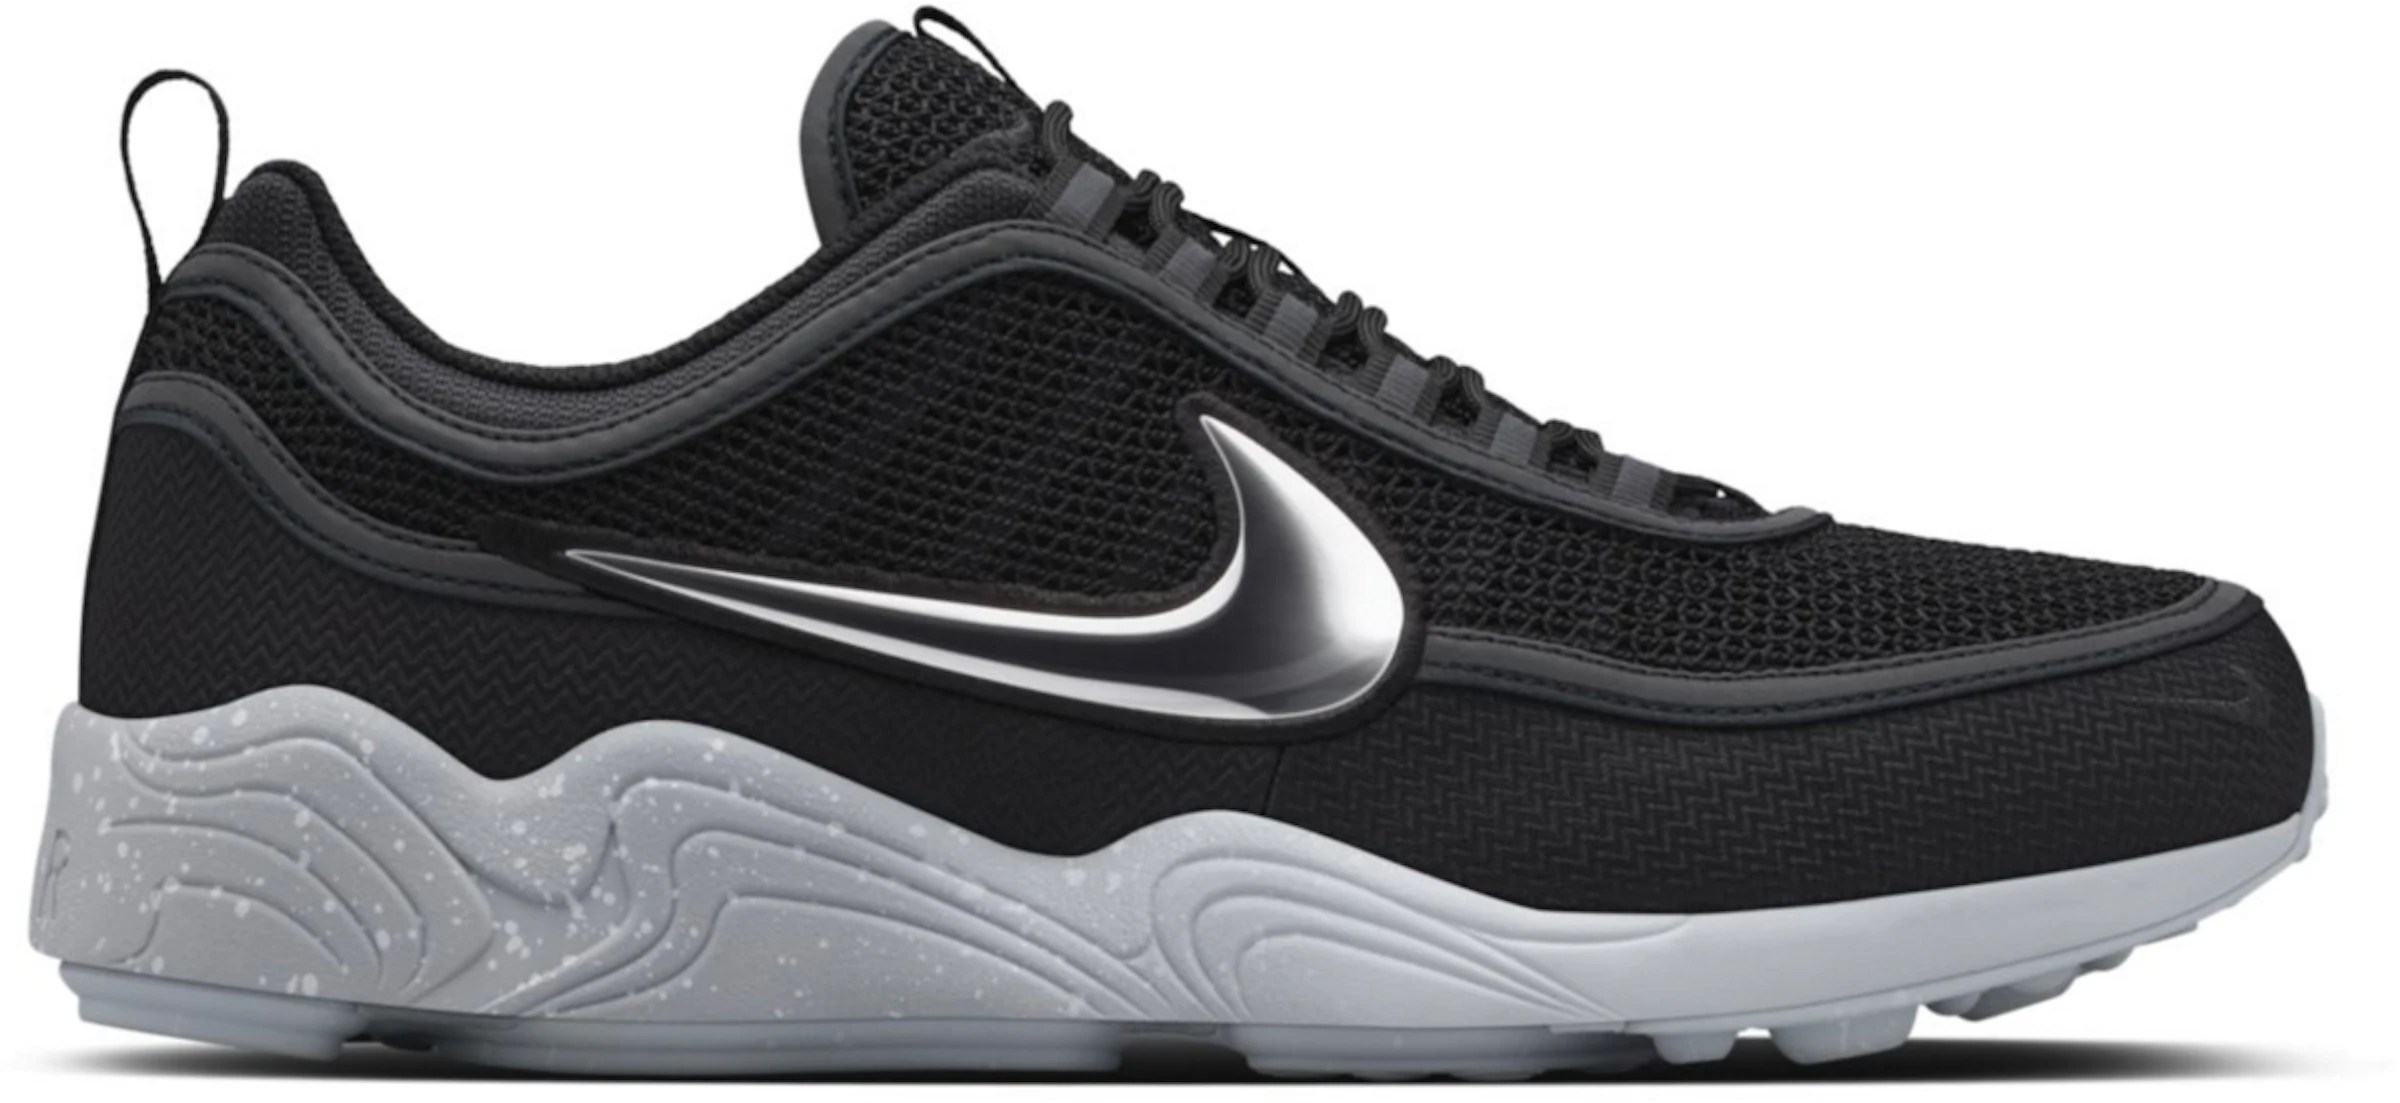 Nike Spiridon Black Grey - - US